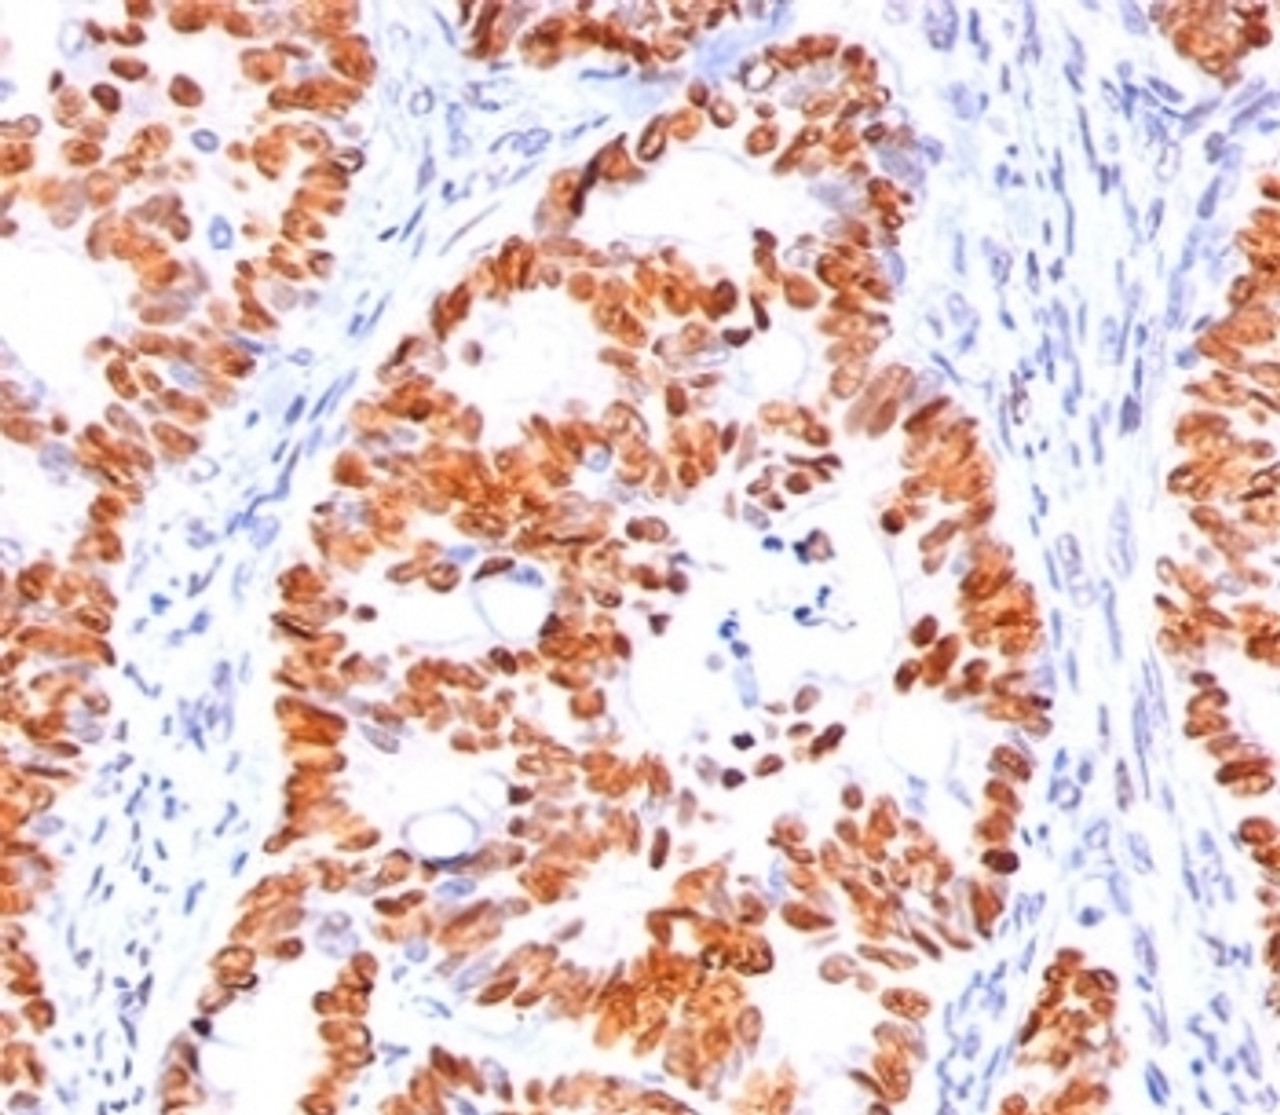 IHC staining of human colon carcinoma with p53 antibody (BP53-12) .